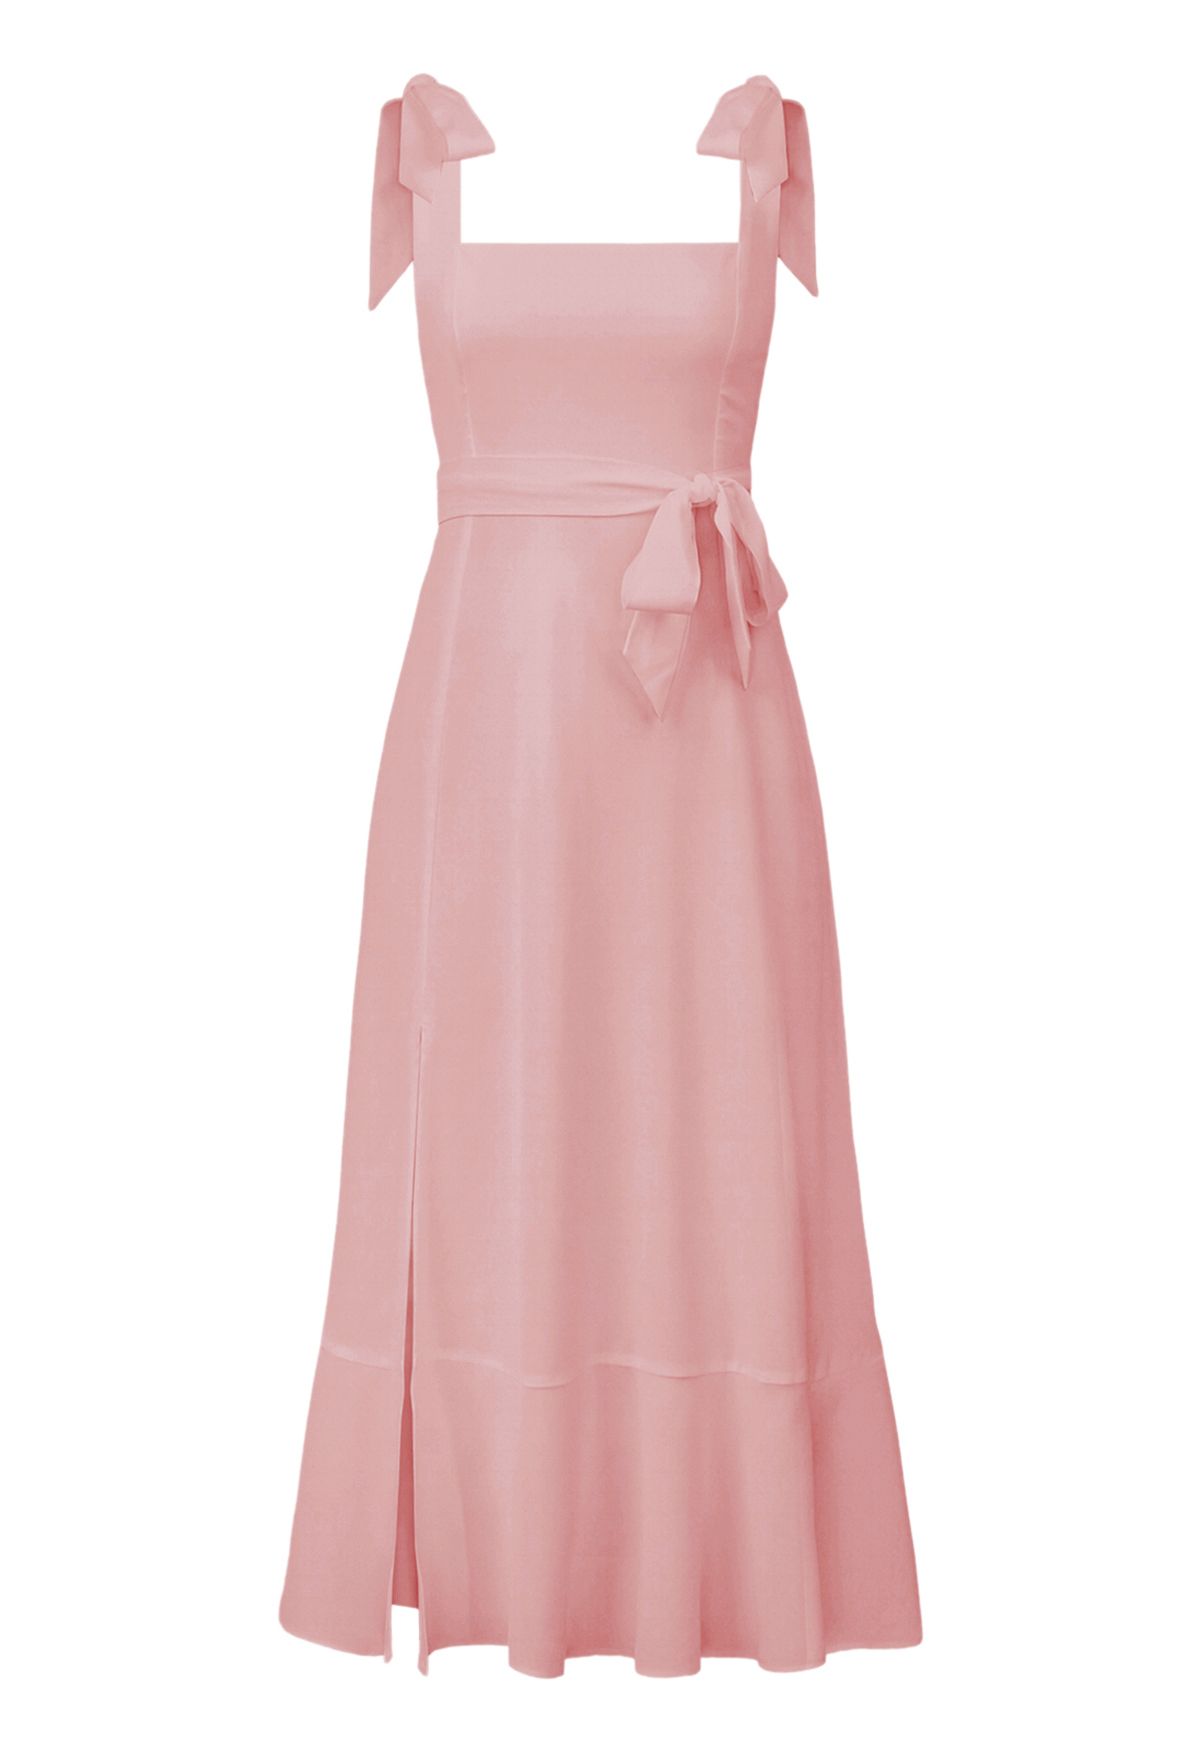 فستان قصير بحافة مكشكشة ورباط على الكتف باللون الوردي